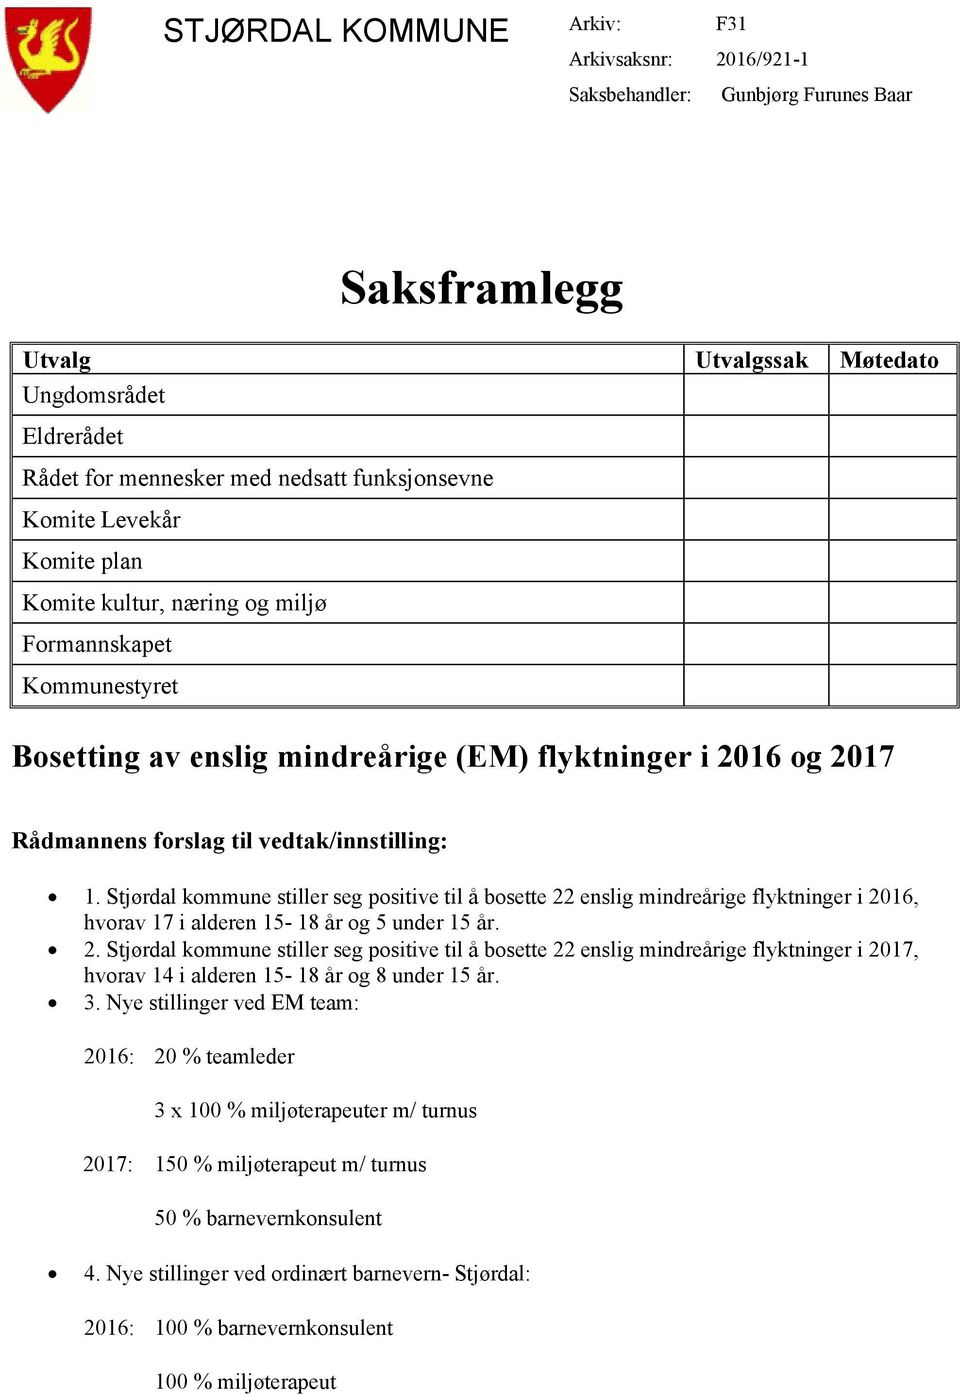 Stjørdal kommune stiller seg positive til å bosette 22 enslig mindreårige flyktninger i 2016, hvorav 17 i alderen 15-18 år og 5 under 15 år. 2. Stjørdal kommune stiller seg positive til å bosette 22 enslig mindreårige flyktninger i 2017, hvorav 14 i alderen 15-18 år og 8 under 15 år.